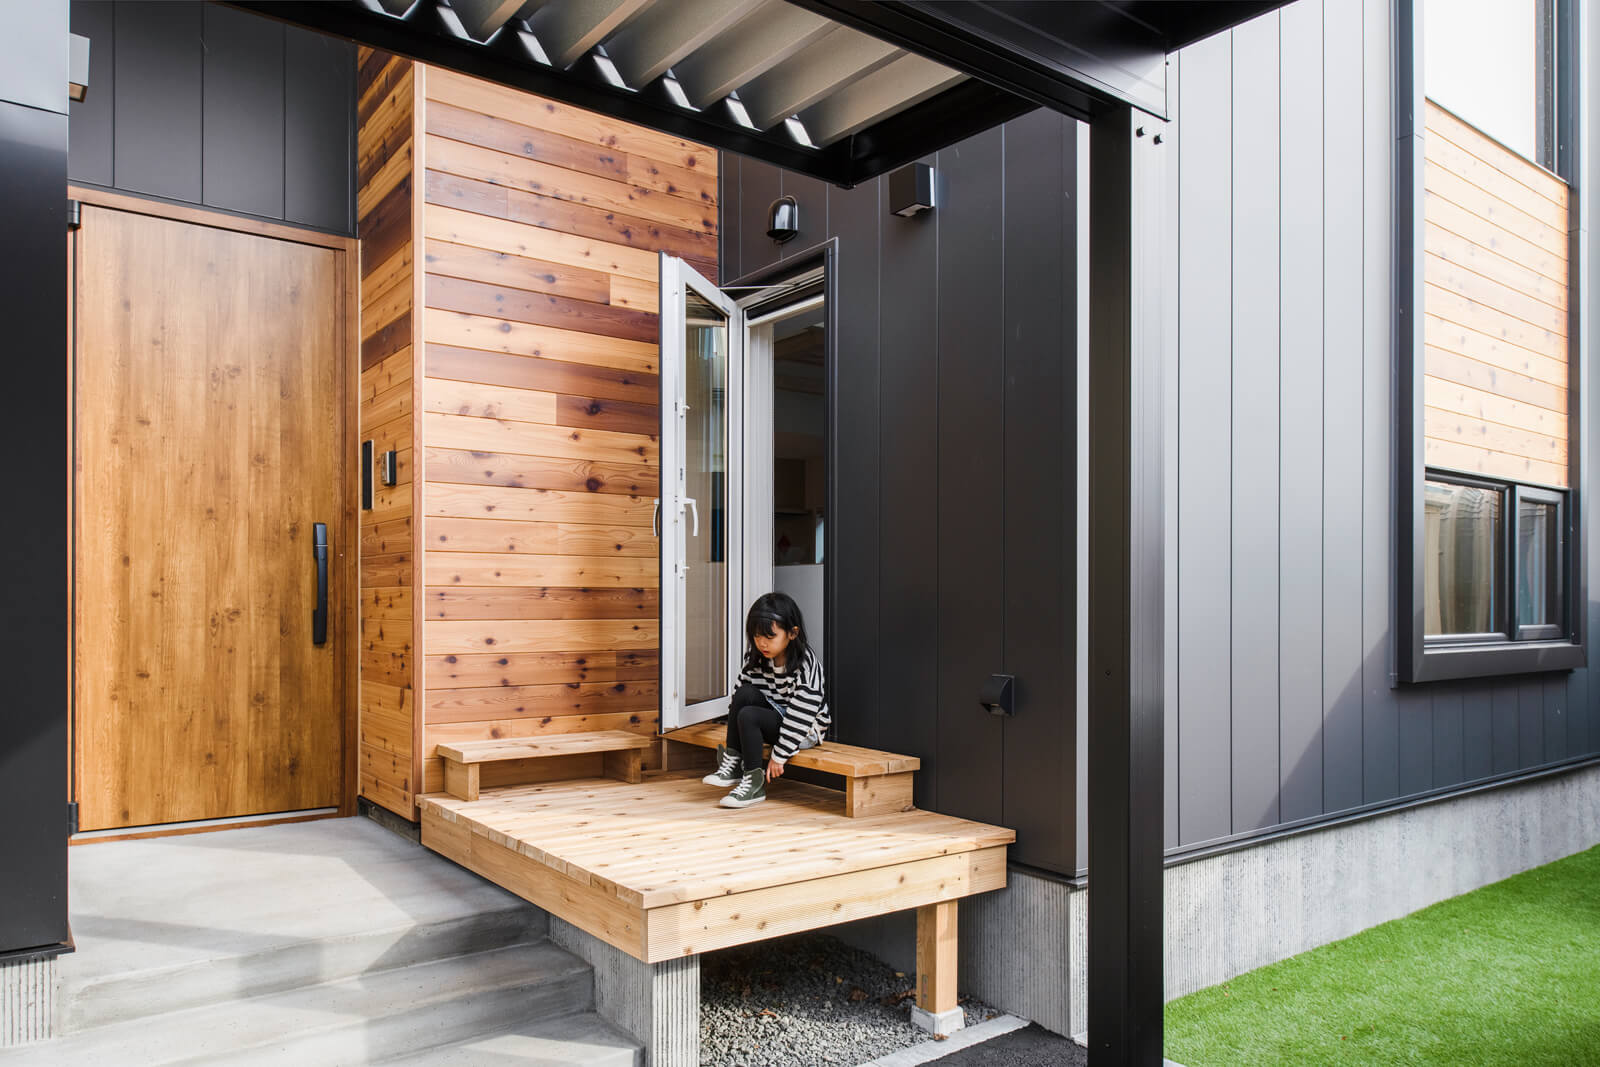 内と外をつなげるウッドデッキは玄関ポーチに配置。コンパクトなサイズながらも、子どもたちの遊び場やベンチ代わりになるなど機能的な空間となっている。レッドシダーの外壁と相まって、外観に木の温もりを添えてくれる